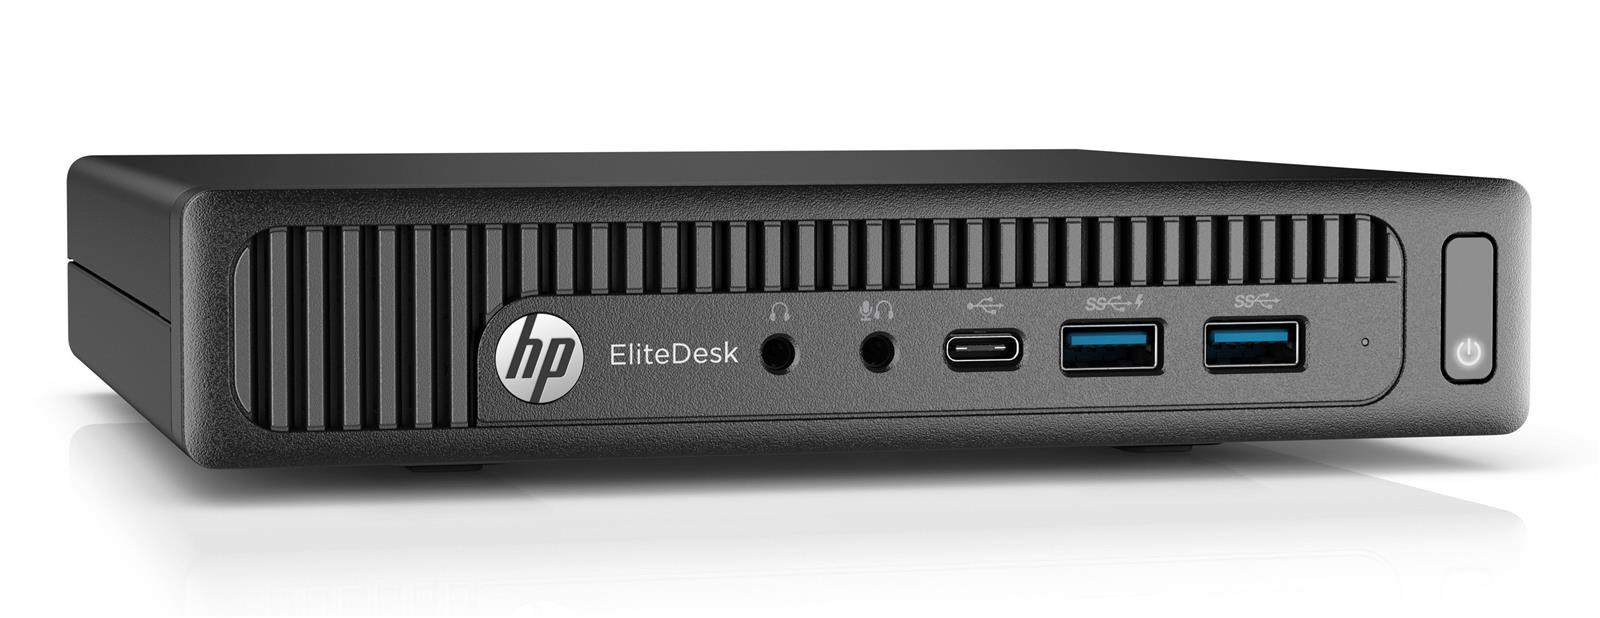 HP EliteDesk 800 G2 USFF Intel i5-6500T 2,50GHz 8GB RAM 128GB SSD Win 10 Pro Mini-PC